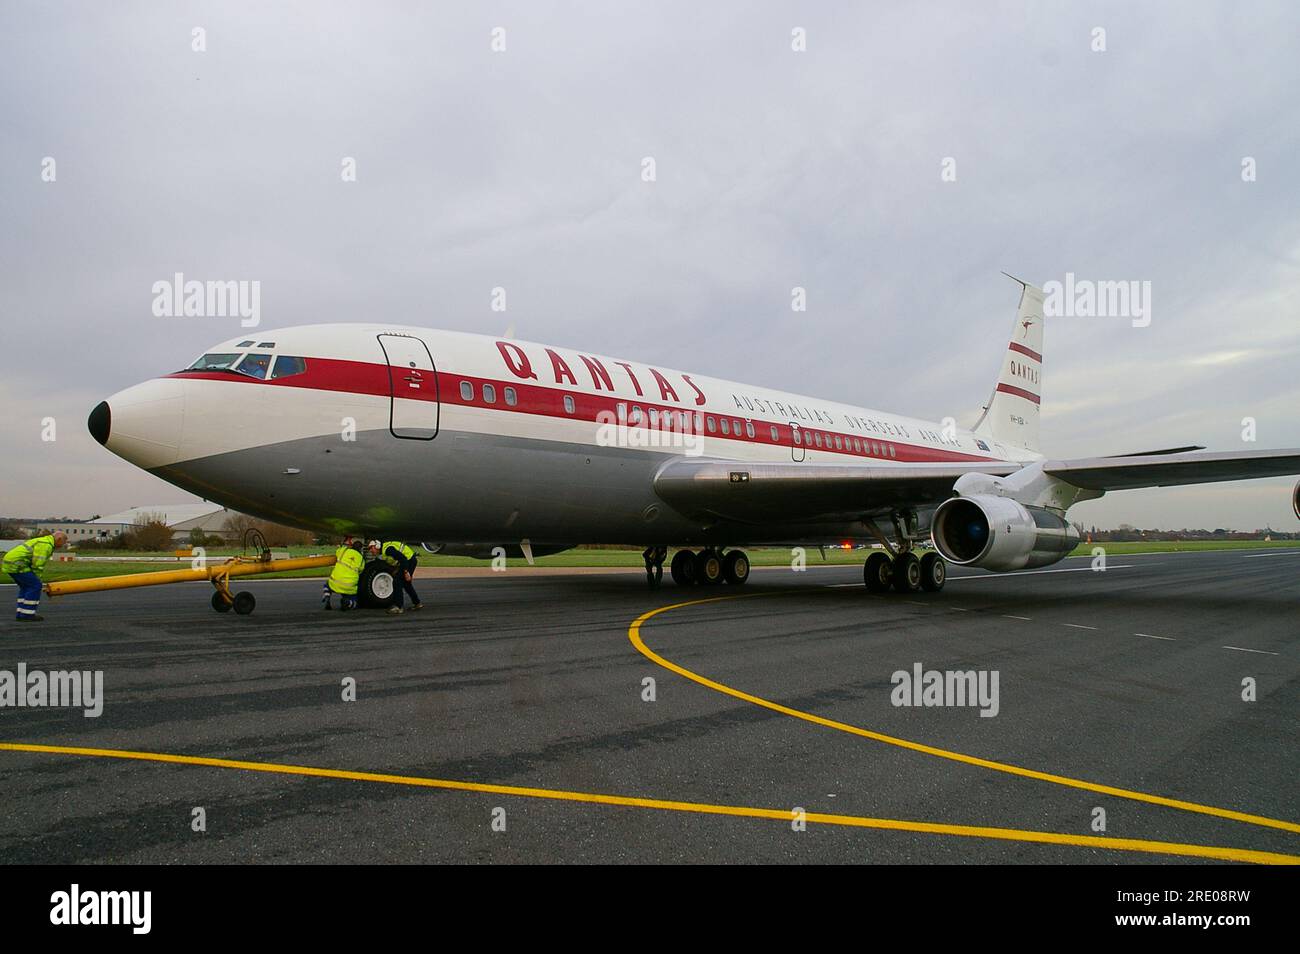 QANTAS Boeing 707 VH-XBA (vormals VH-EBA), das erste Düsenflugzeug der Fluggesellschaft, nach der Restaurierung am Flughafen Southend, Großbritannien. Ich bin nach Australien geflogen Stockfoto